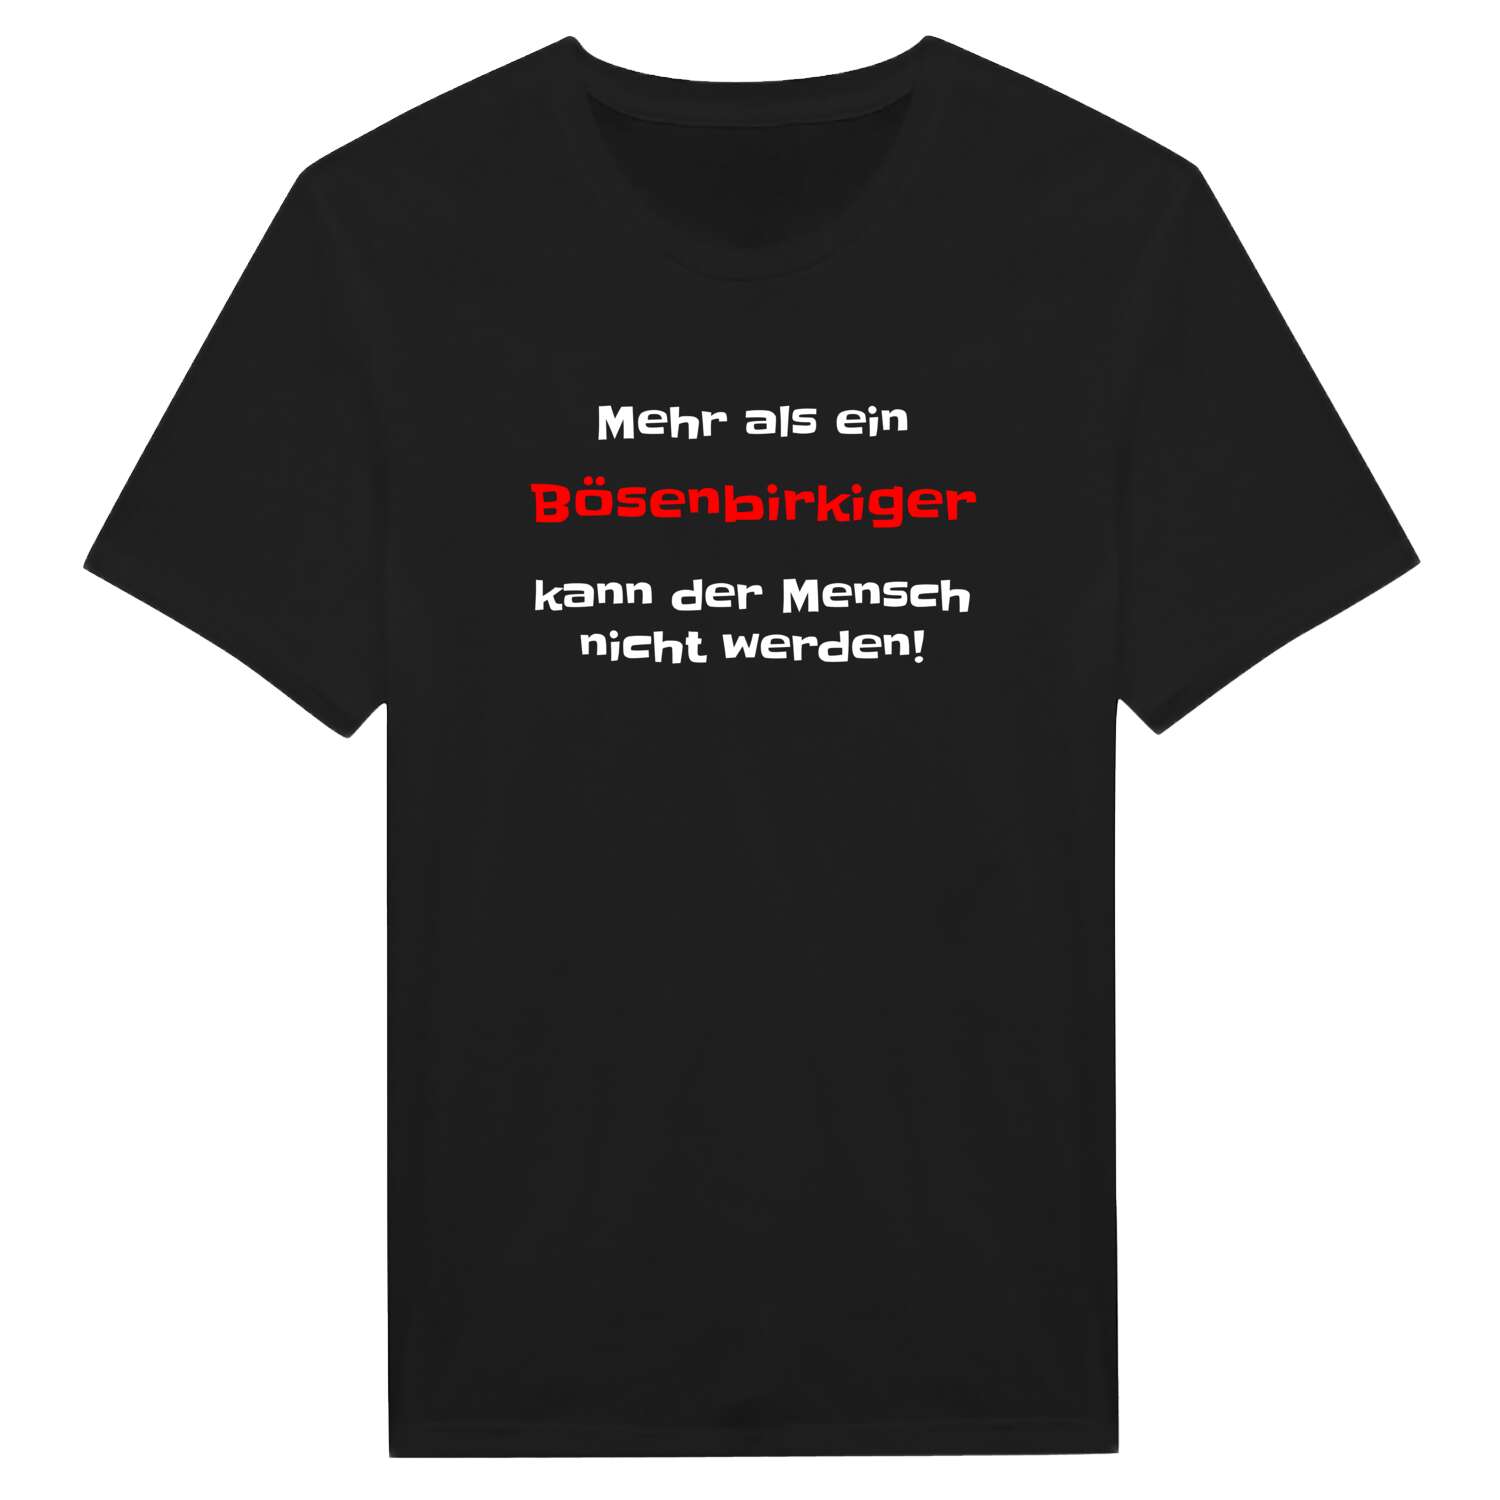 Bösenbirkig T-Shirt »Mehr als ein«